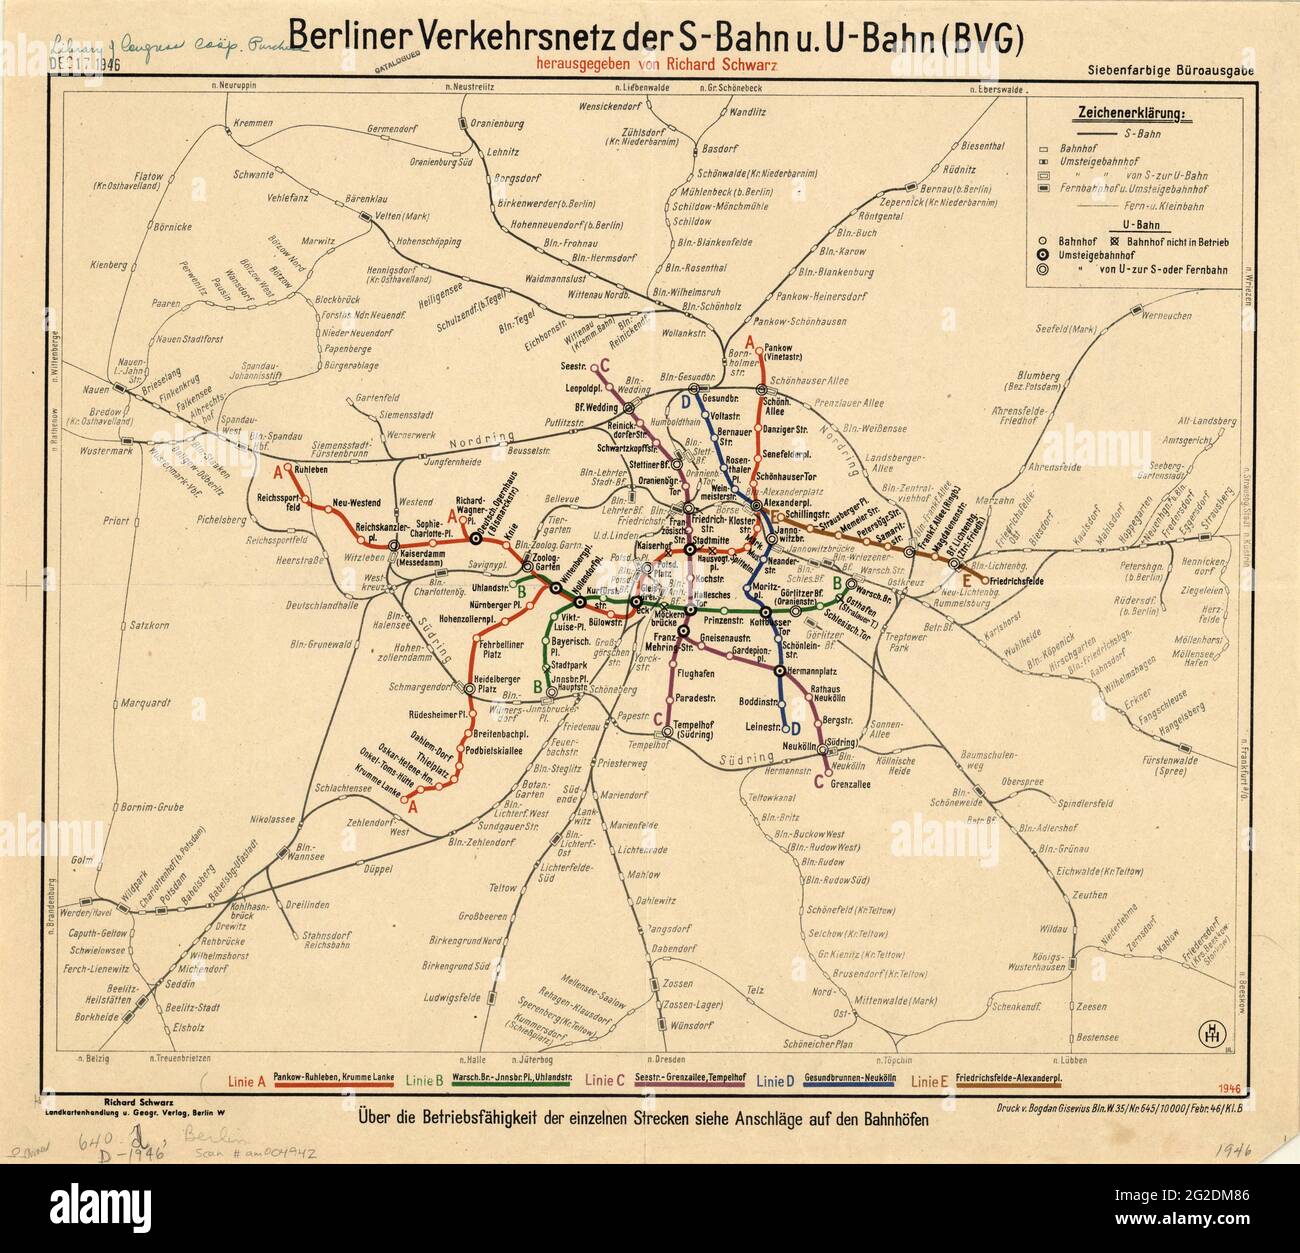 Berliner Verkehrsnetz, Berlin Plan, Berlin Subway Plan, Berlin Underground Plan, Berlin Subway Map, Berlin Map, Old Map of Berlin, Retro Berlin Map Stock Photo